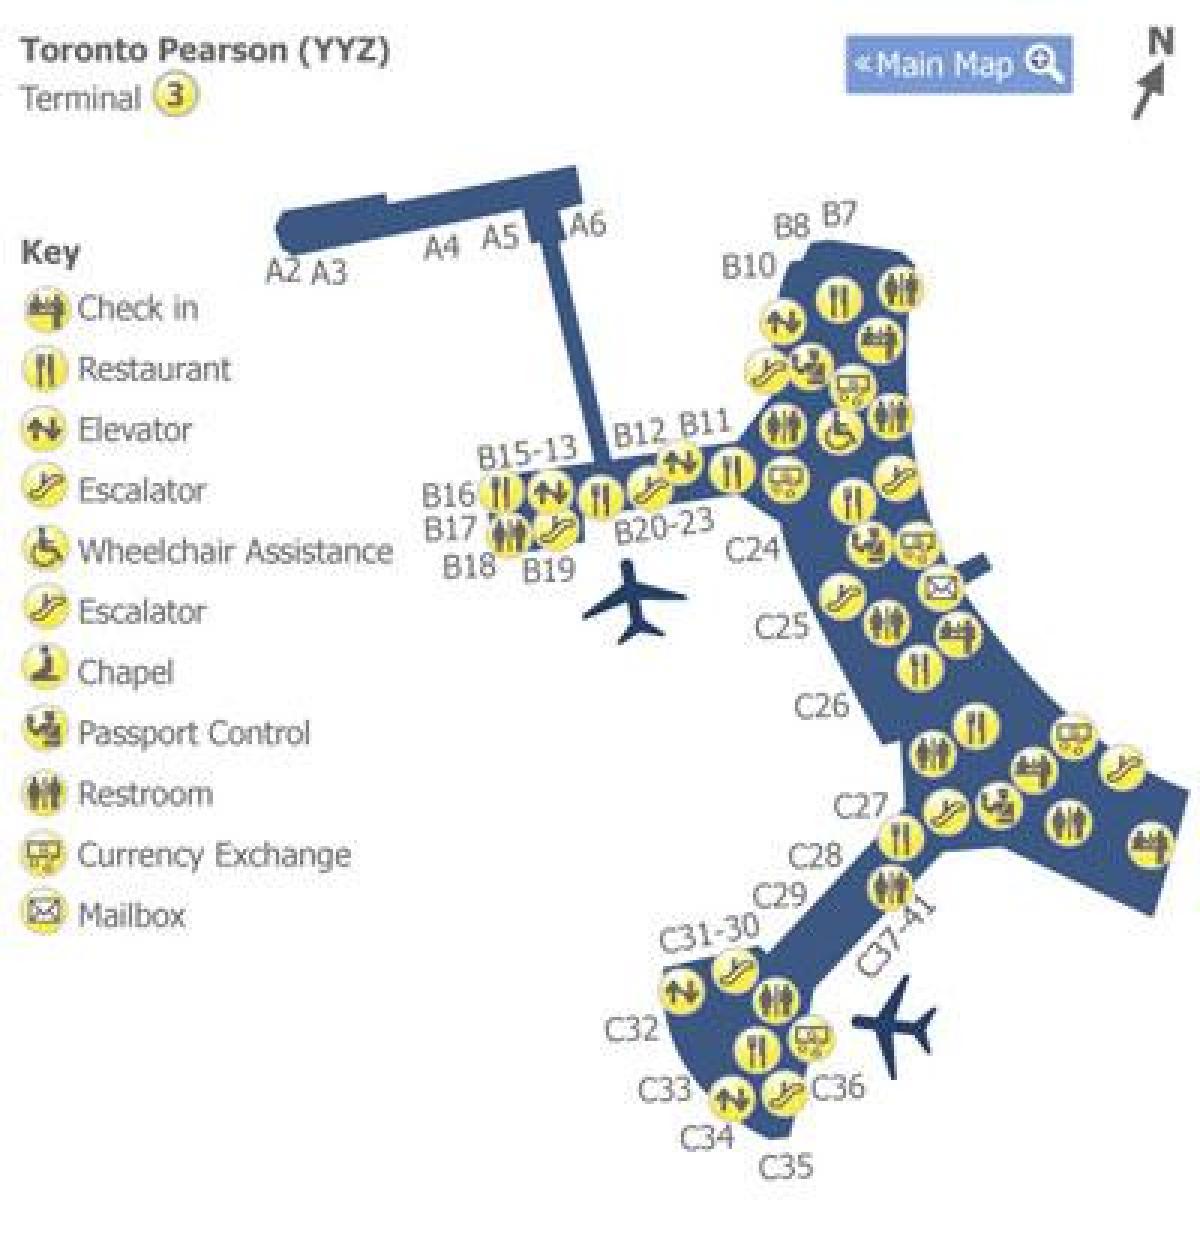 Mapa ng Toronto Pearson airport terminal 3